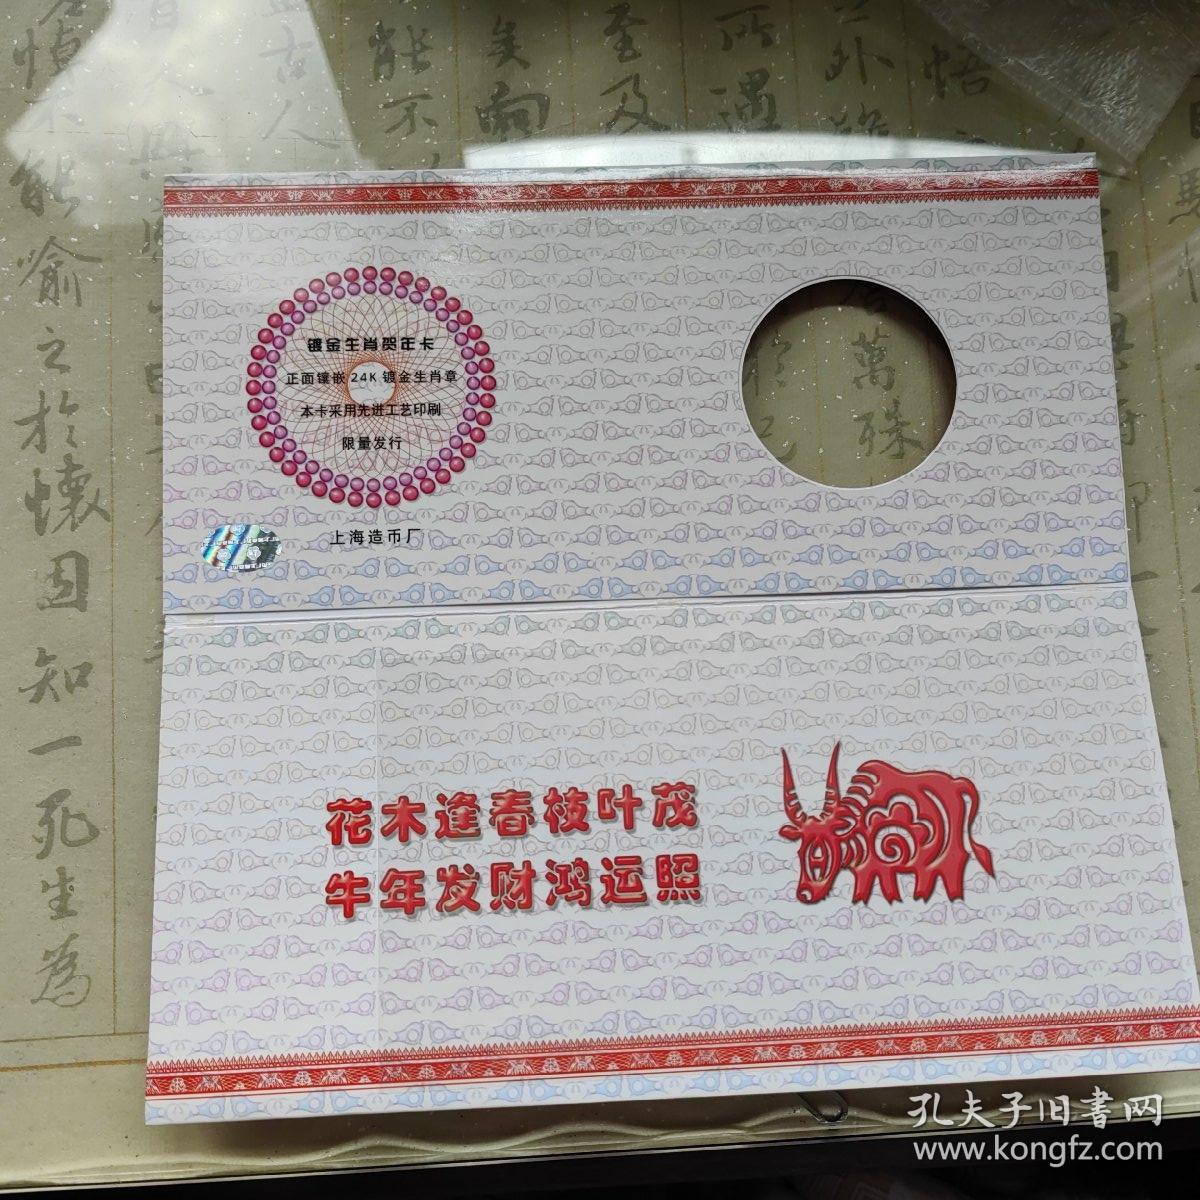 2009牛年生肖贺年卡 上海造币厂制